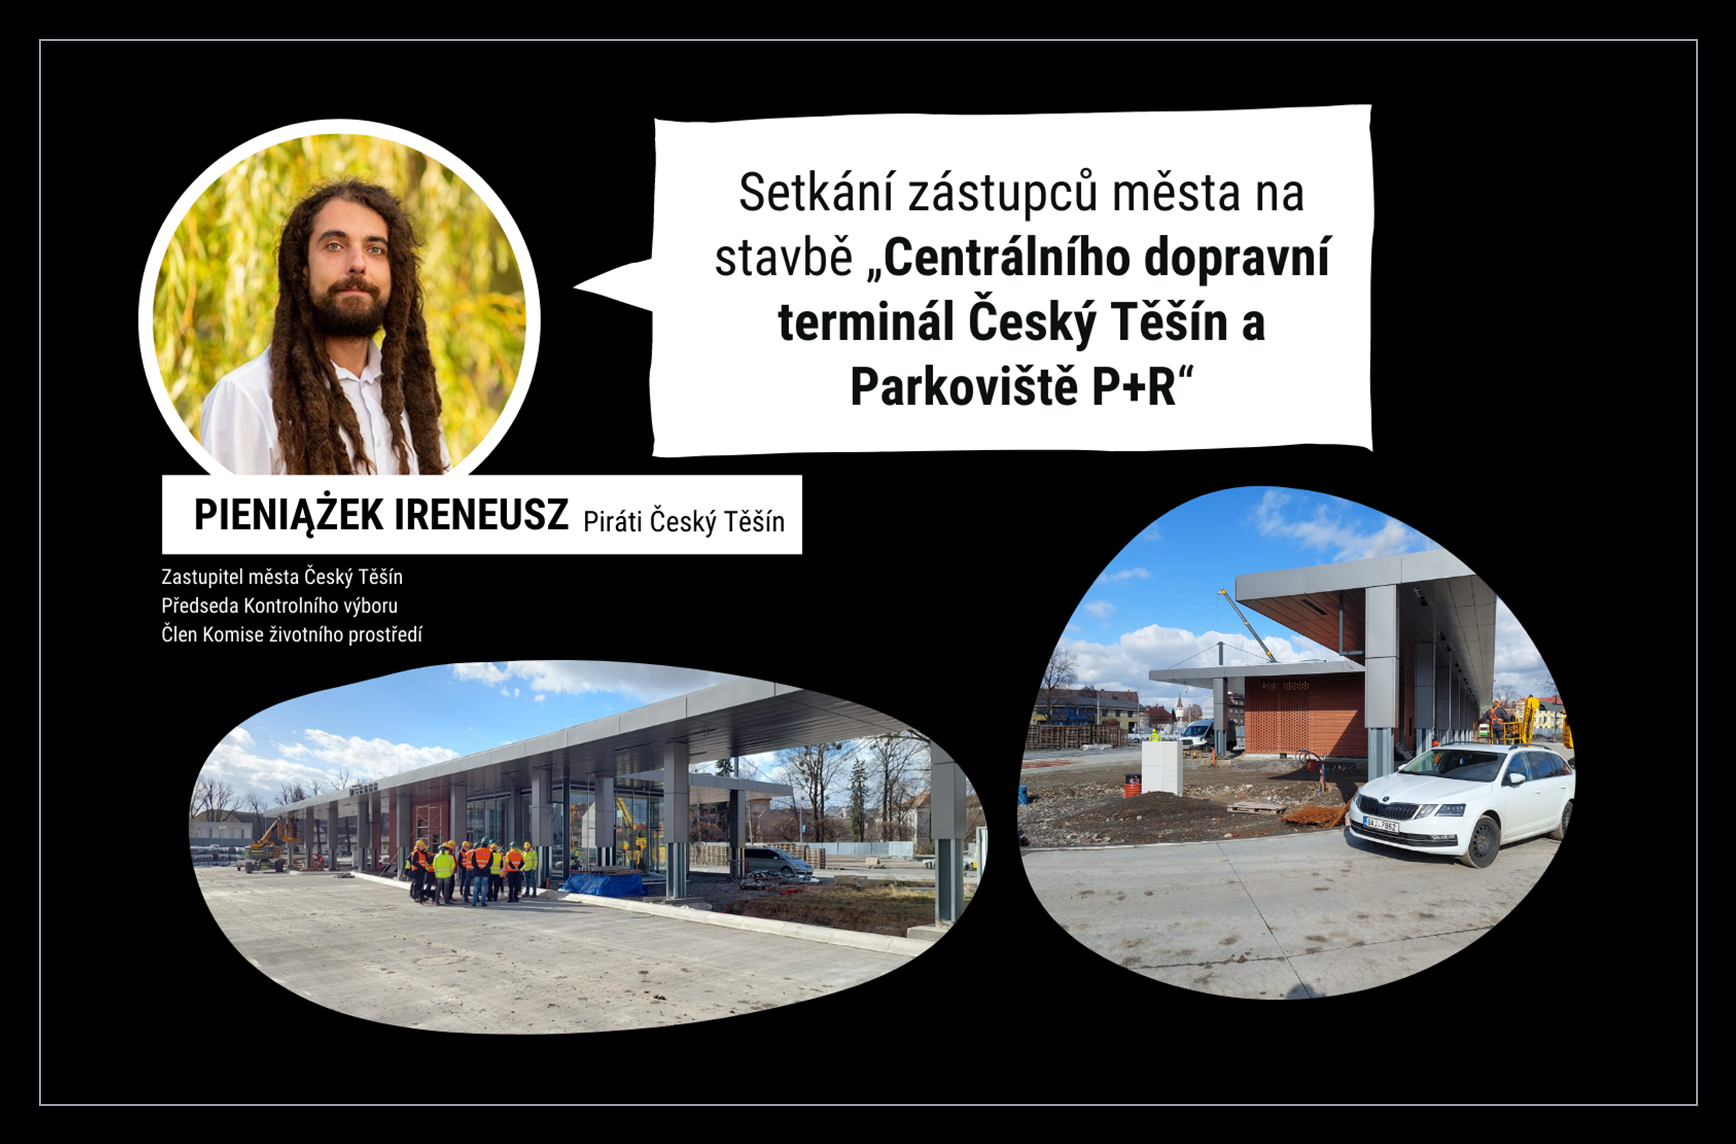 Přečtete si více ze článku Setkání zástupců města, zhotovitele a autora na stavbě „Centrální dopravní terminál Český Těšín a Parkoviště P+R“